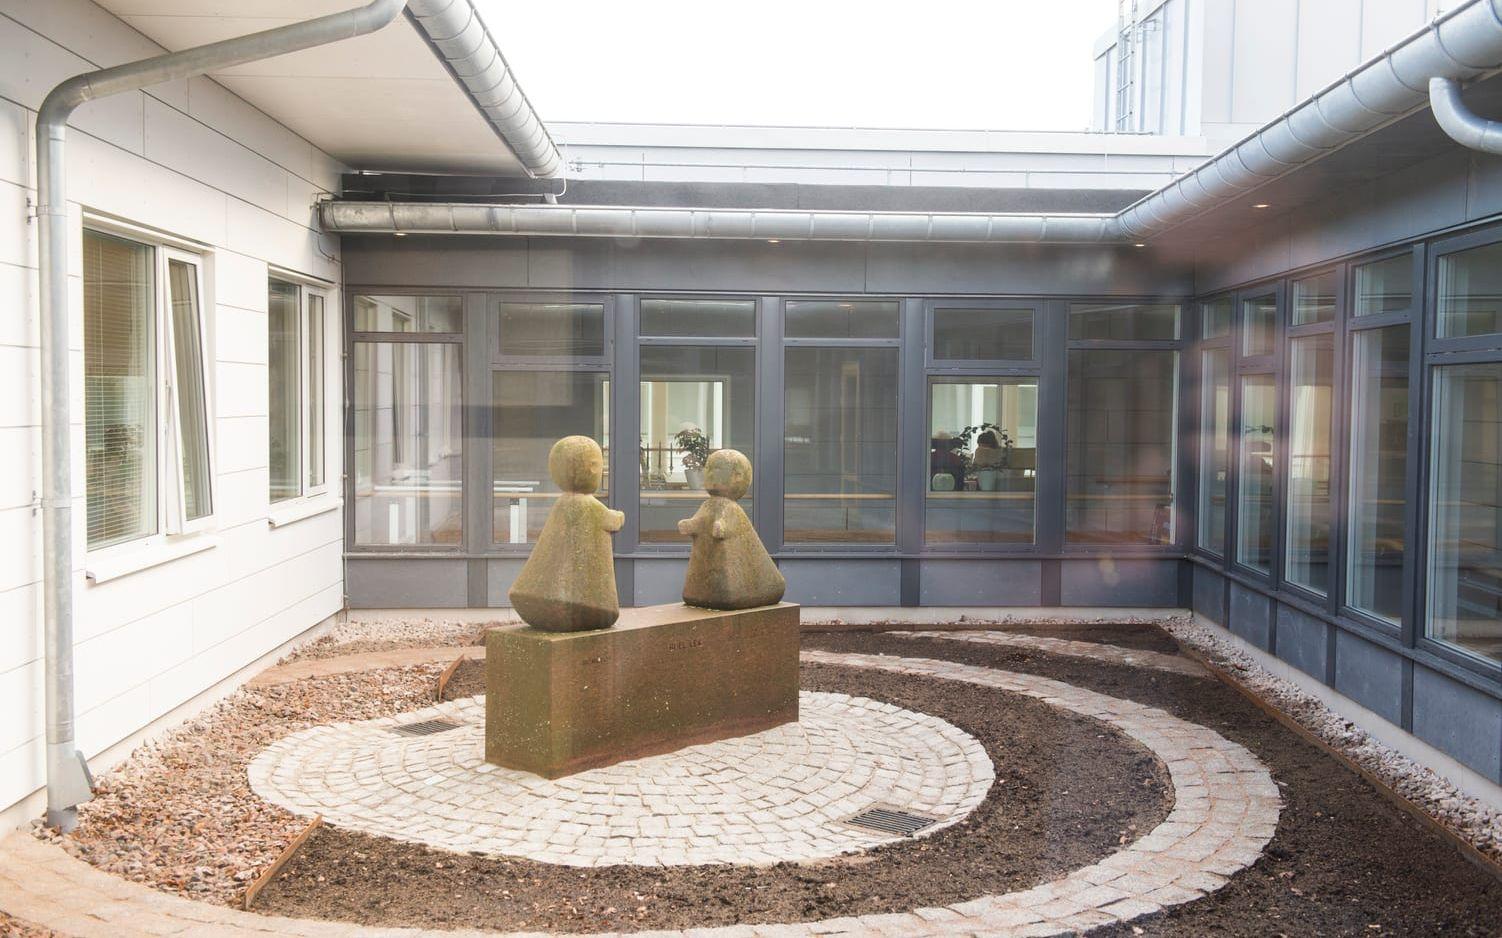 Skulptur av Bernard Andersson i ljusgården. Bild: Roger Larsson